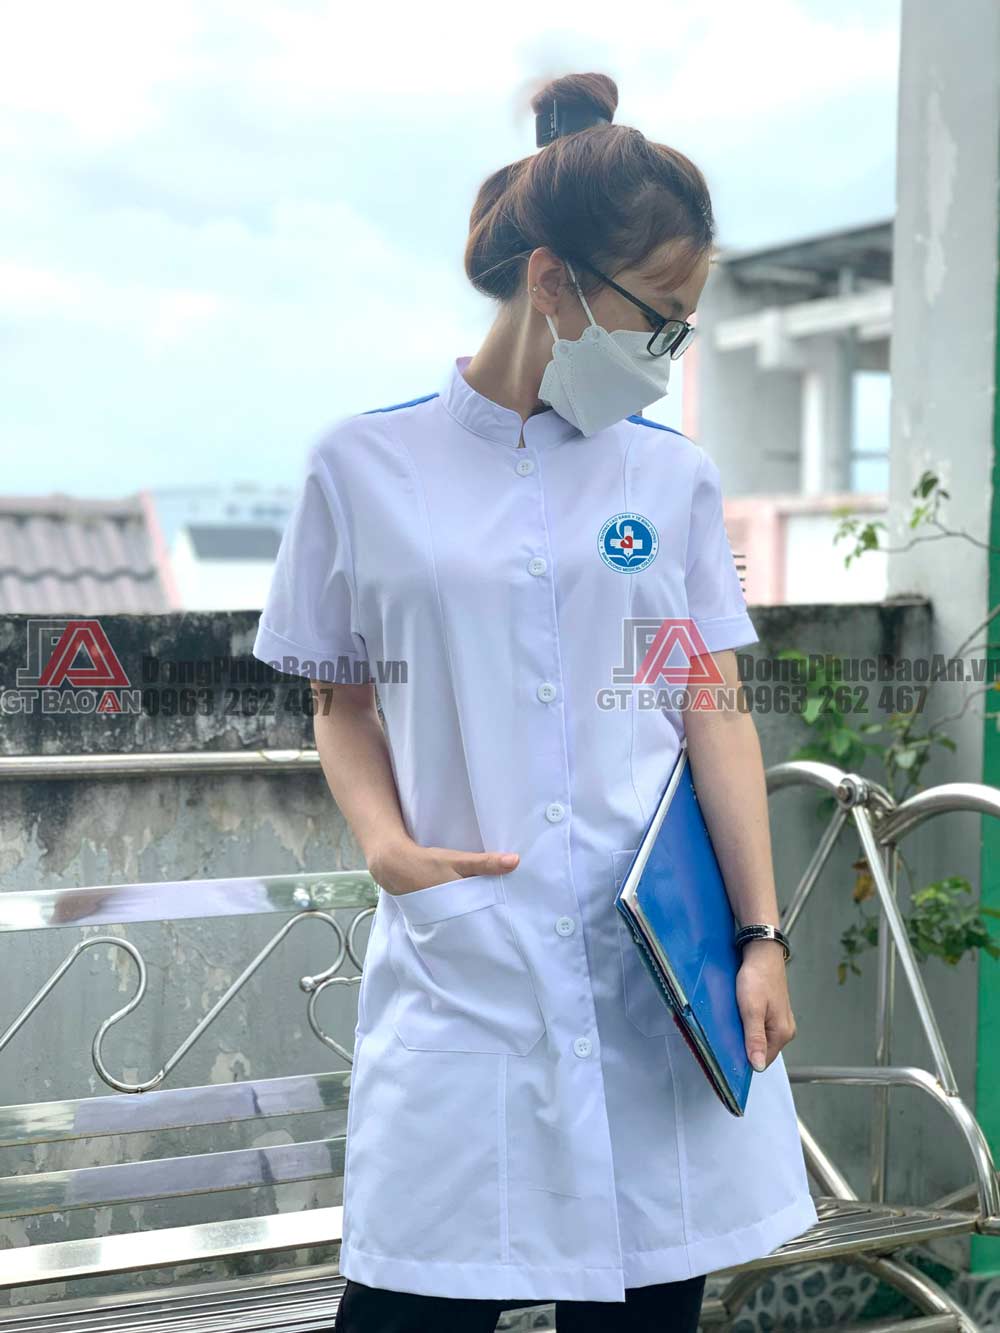 Tổng hợp các mẫu áo blouse trắng sinh viên khoa y mới nhất, áo blouse vải tốt giá tốt TPHCM 